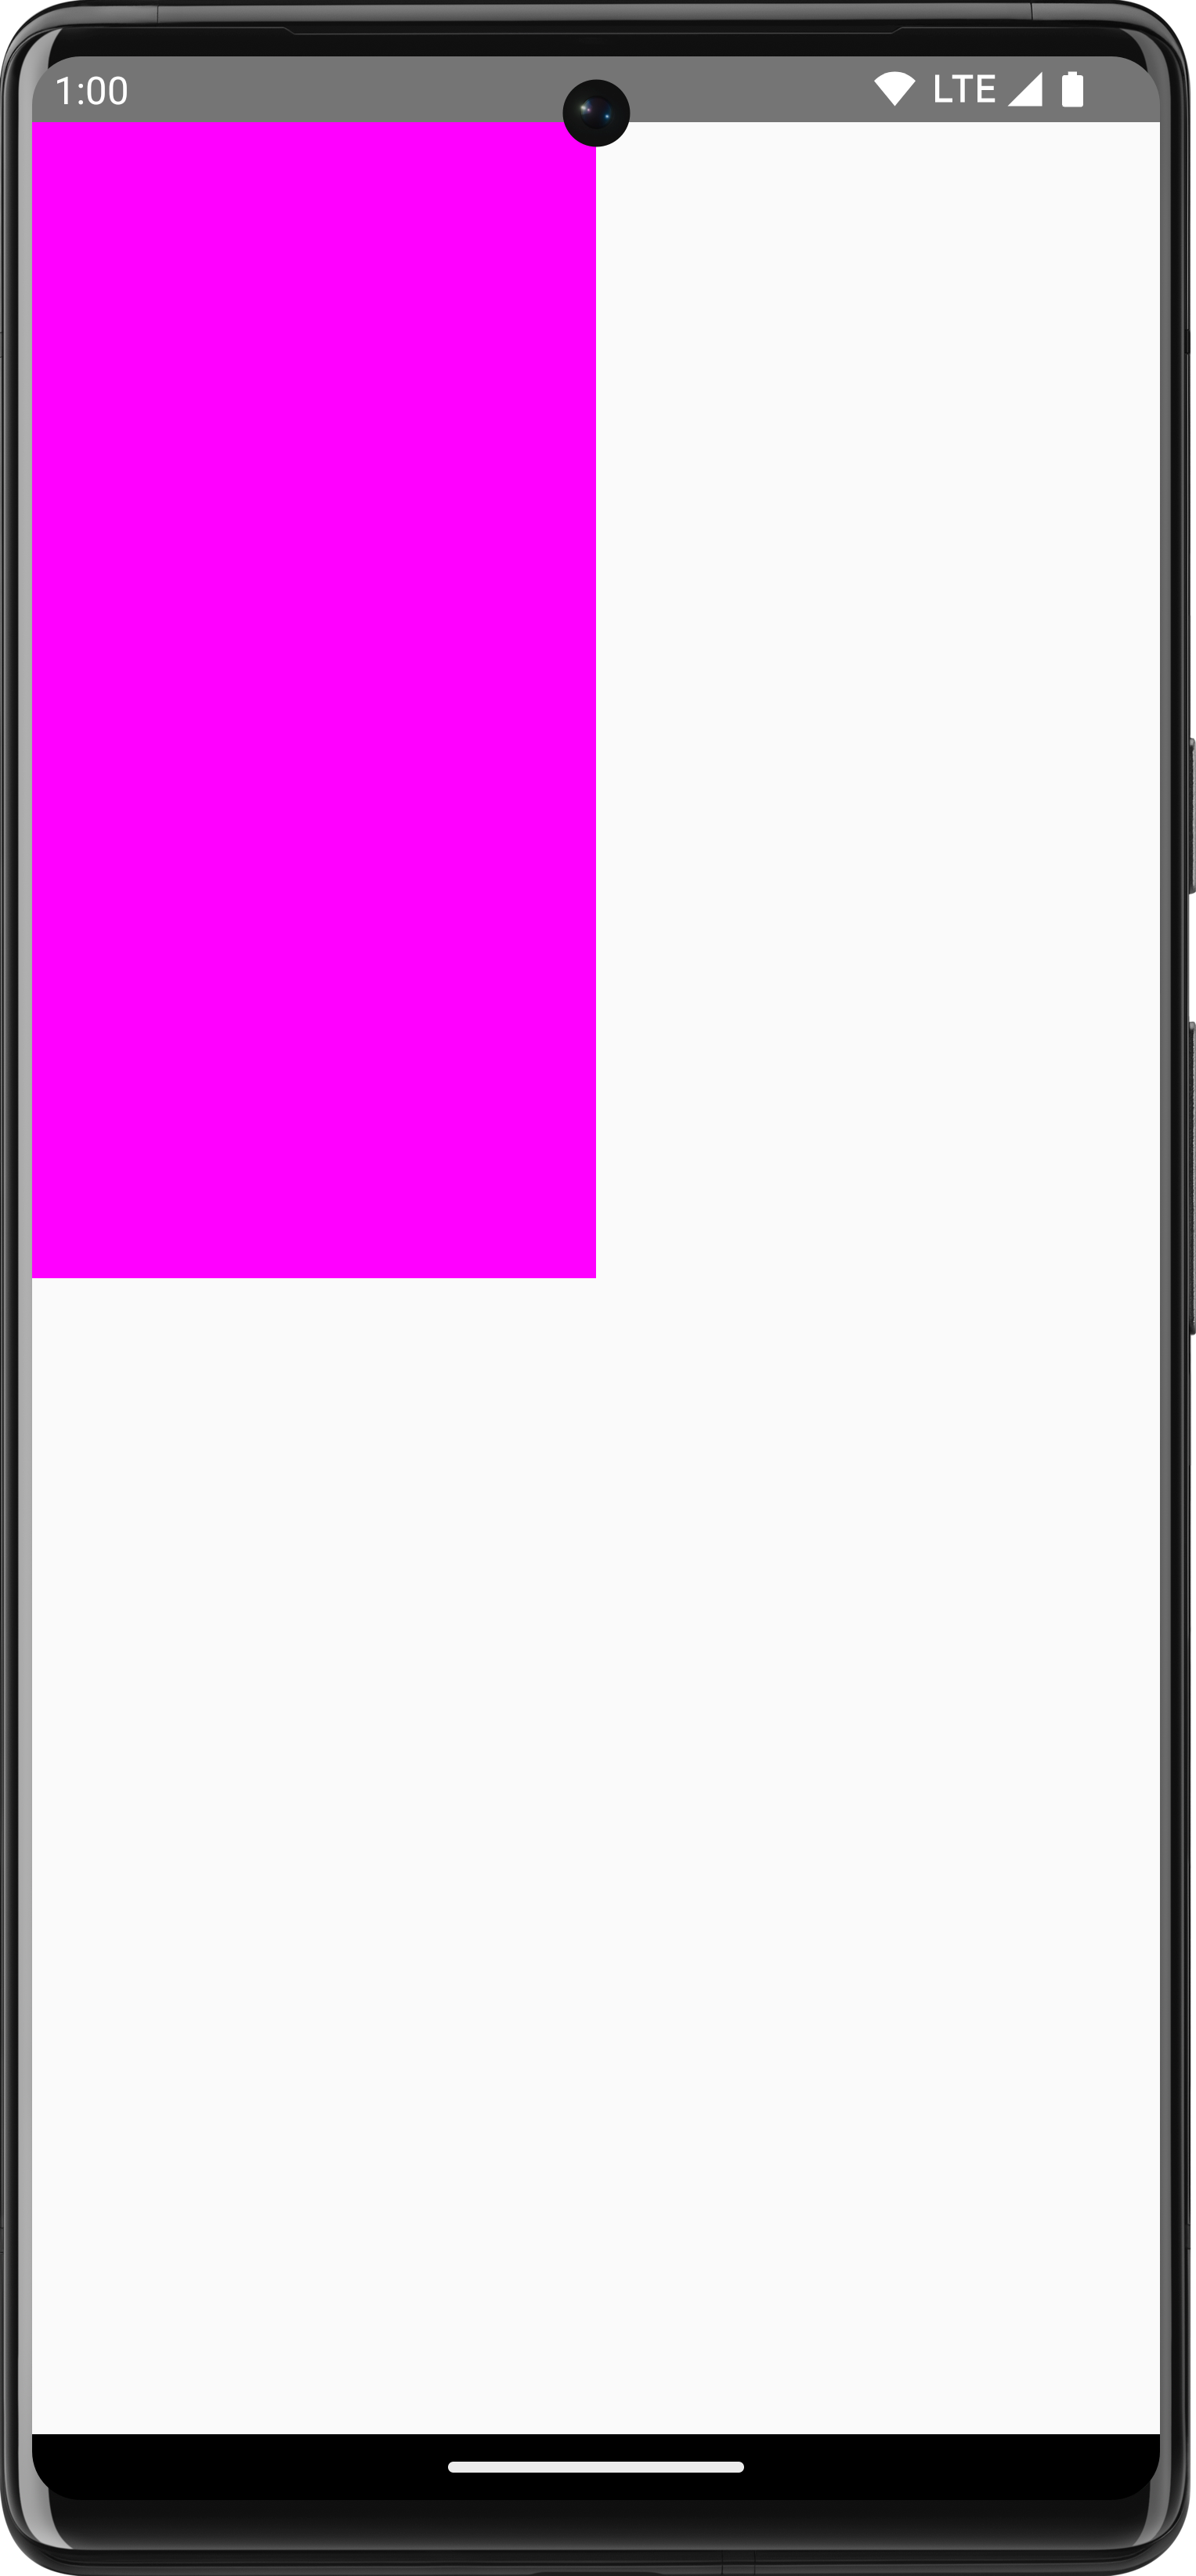 مستطيل وردي مرسوم على خلفية بيضاء يشغل ربع الشاشة